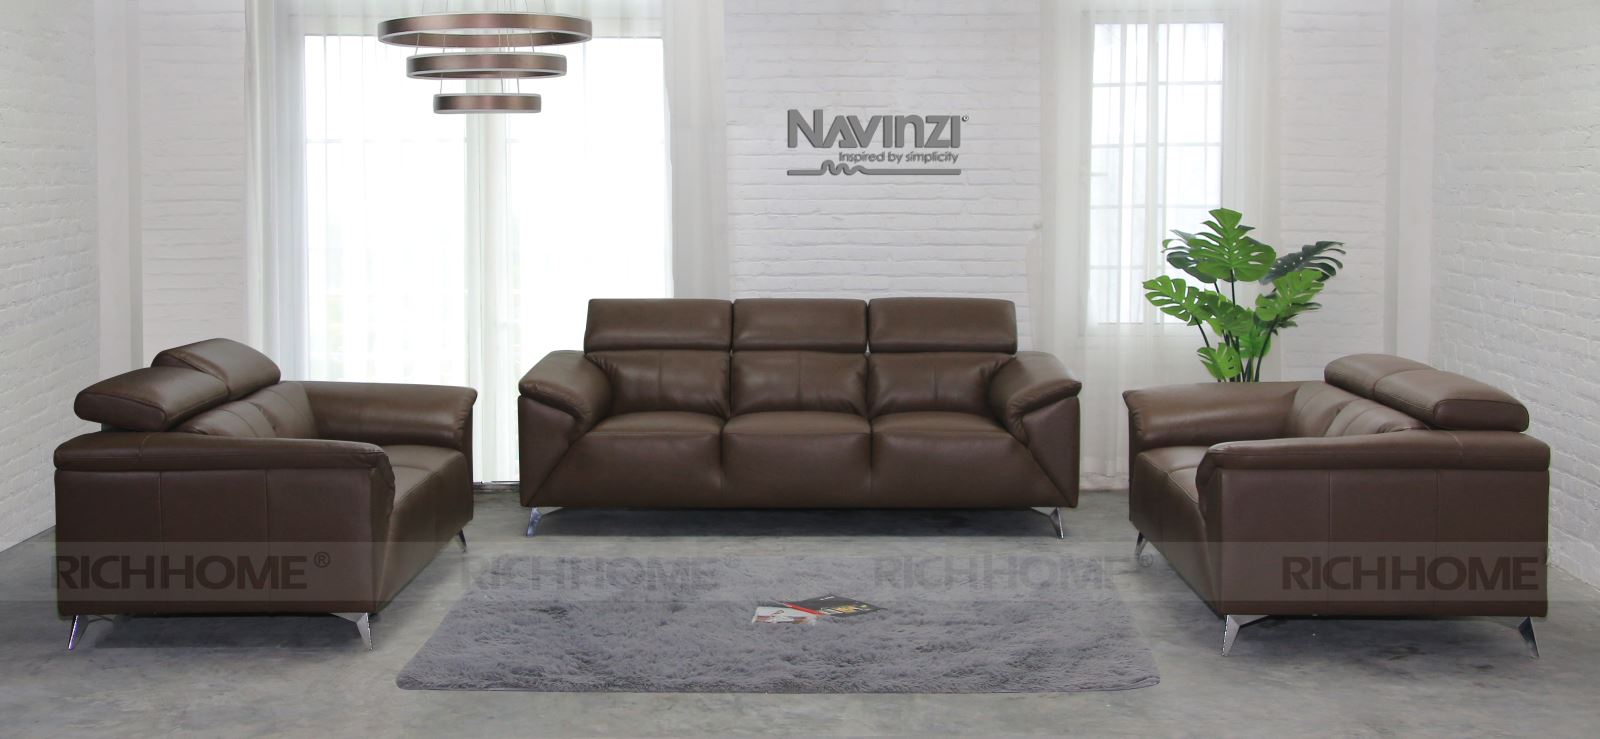 4 kiểu thiết kế sofa nhập khẩu Malaysia ấn tượng nhất - Ảnh 4